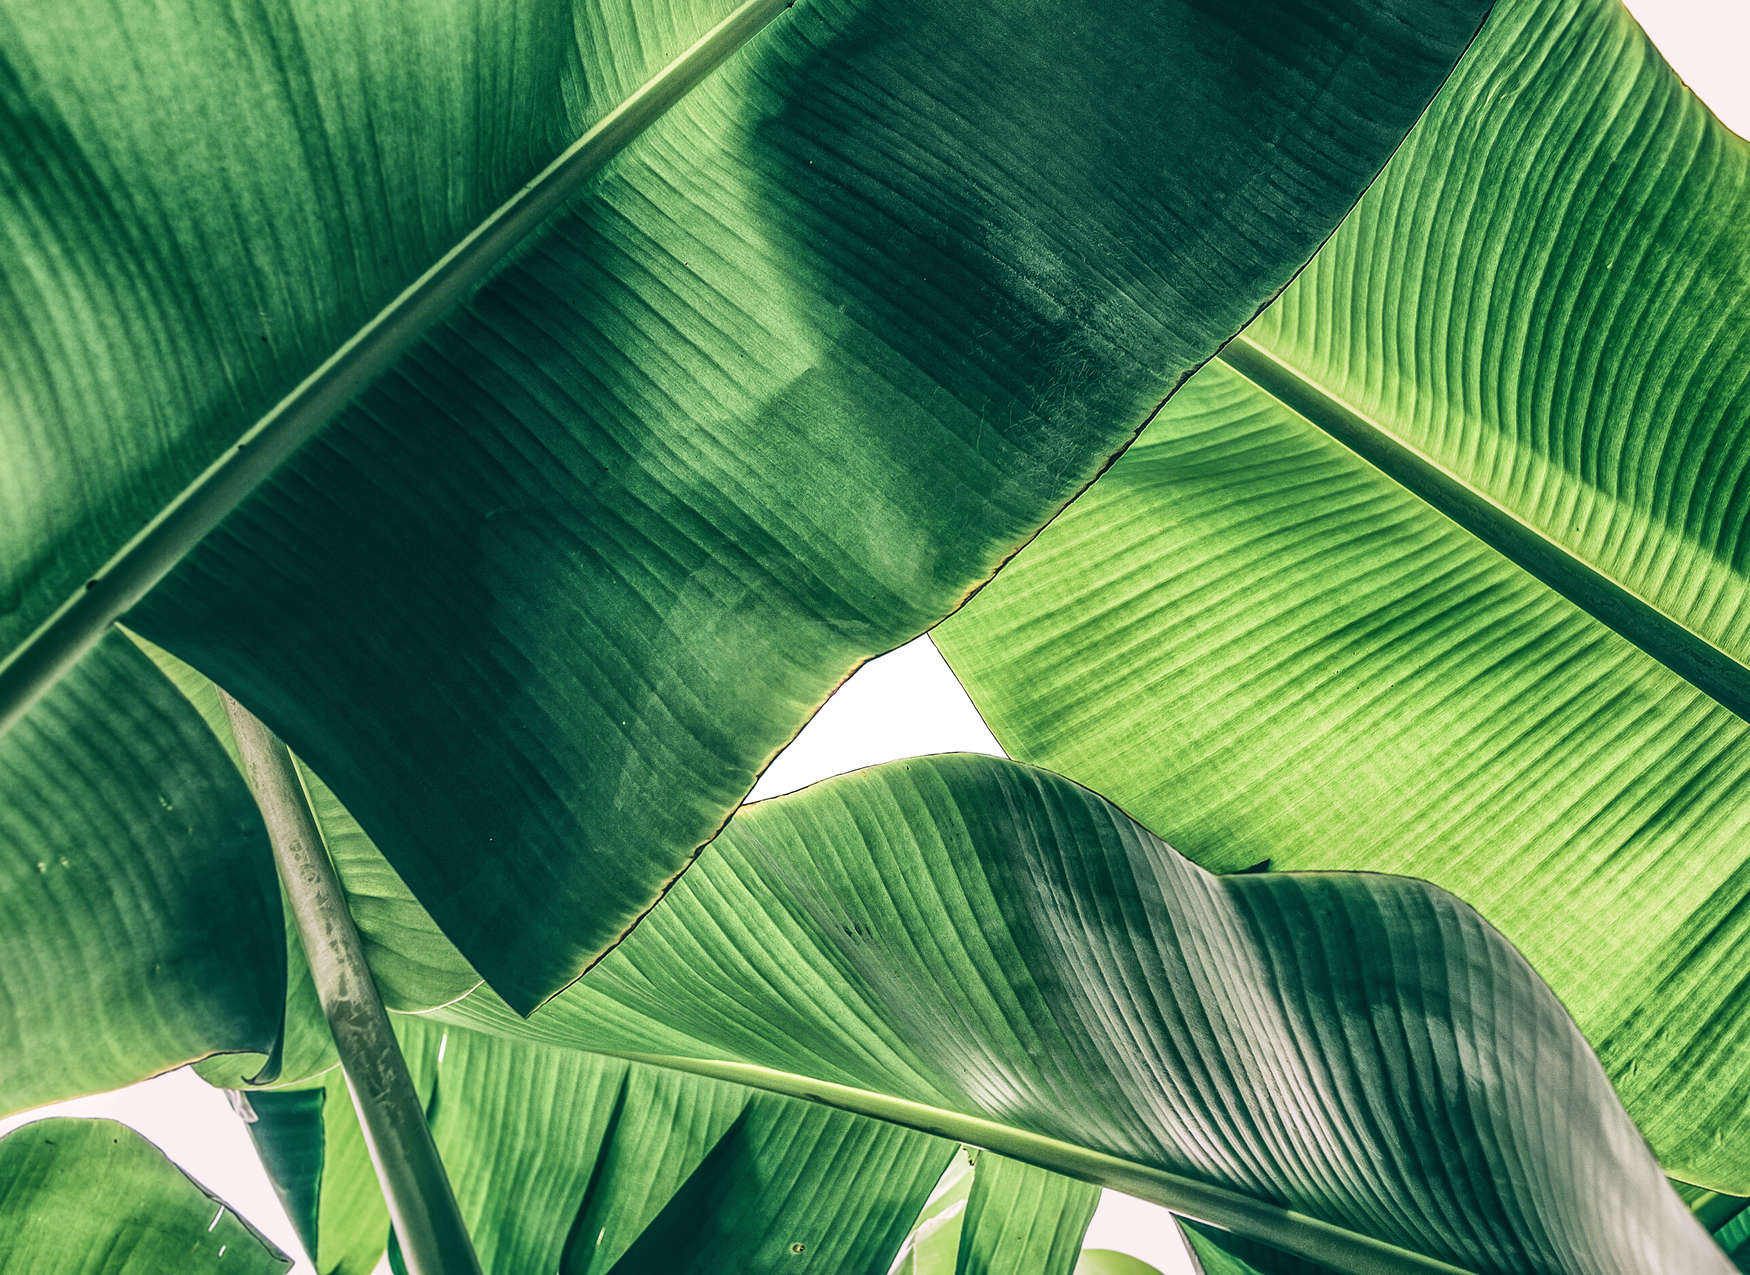             Detalle de las hojas tropicales Motivo del cuadro - Verde
        